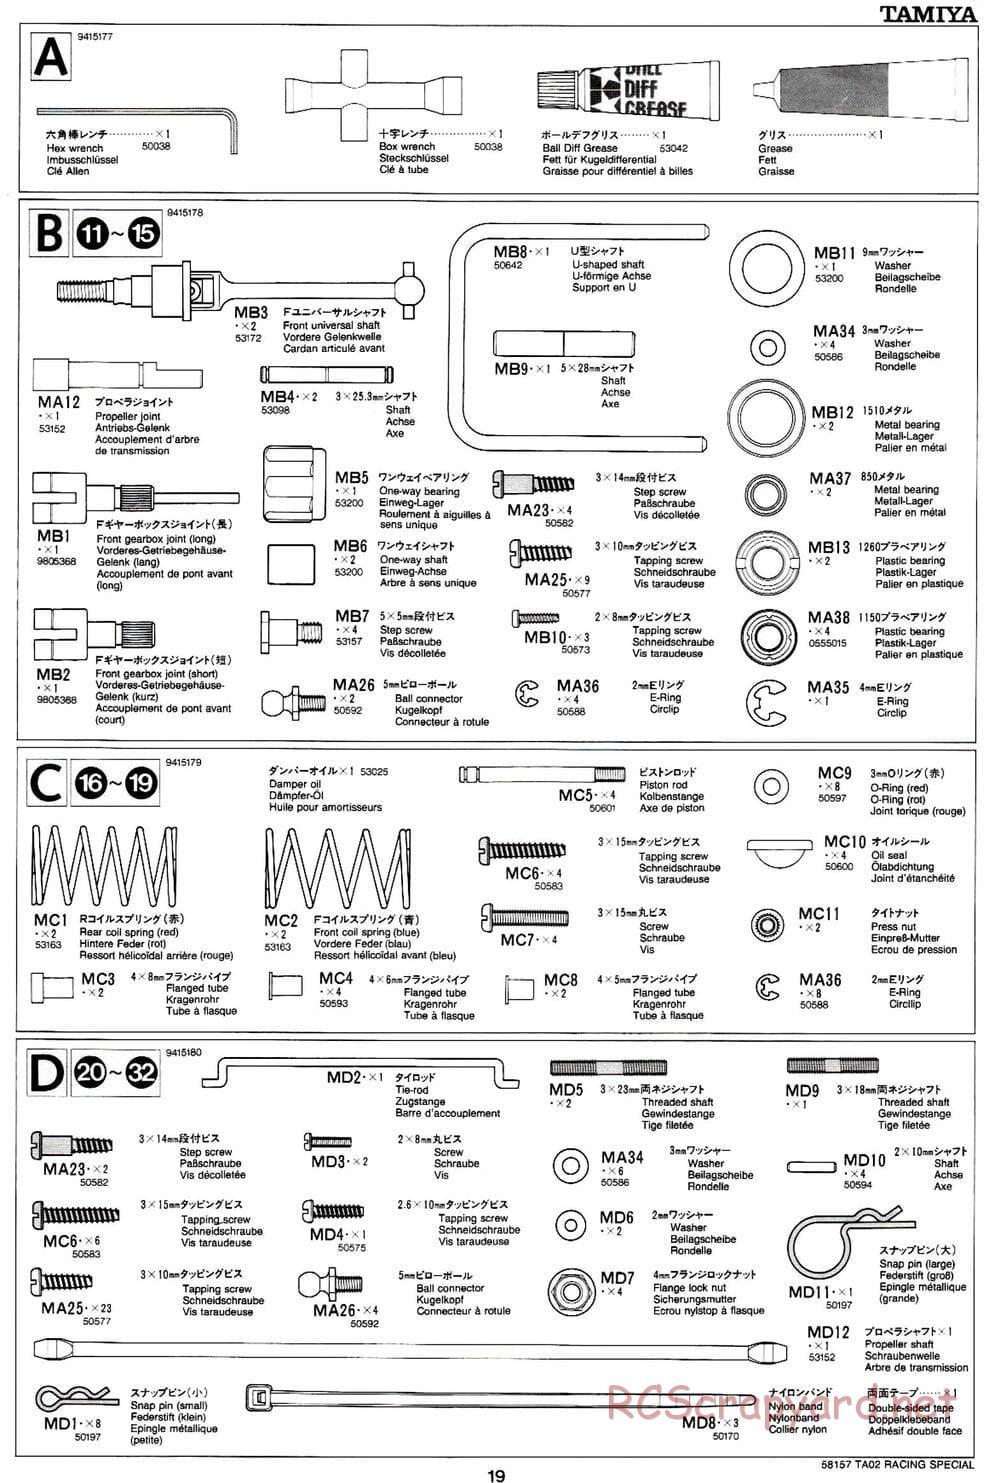 Tamiya - TA-02RS Chassis - Manual - Page 19